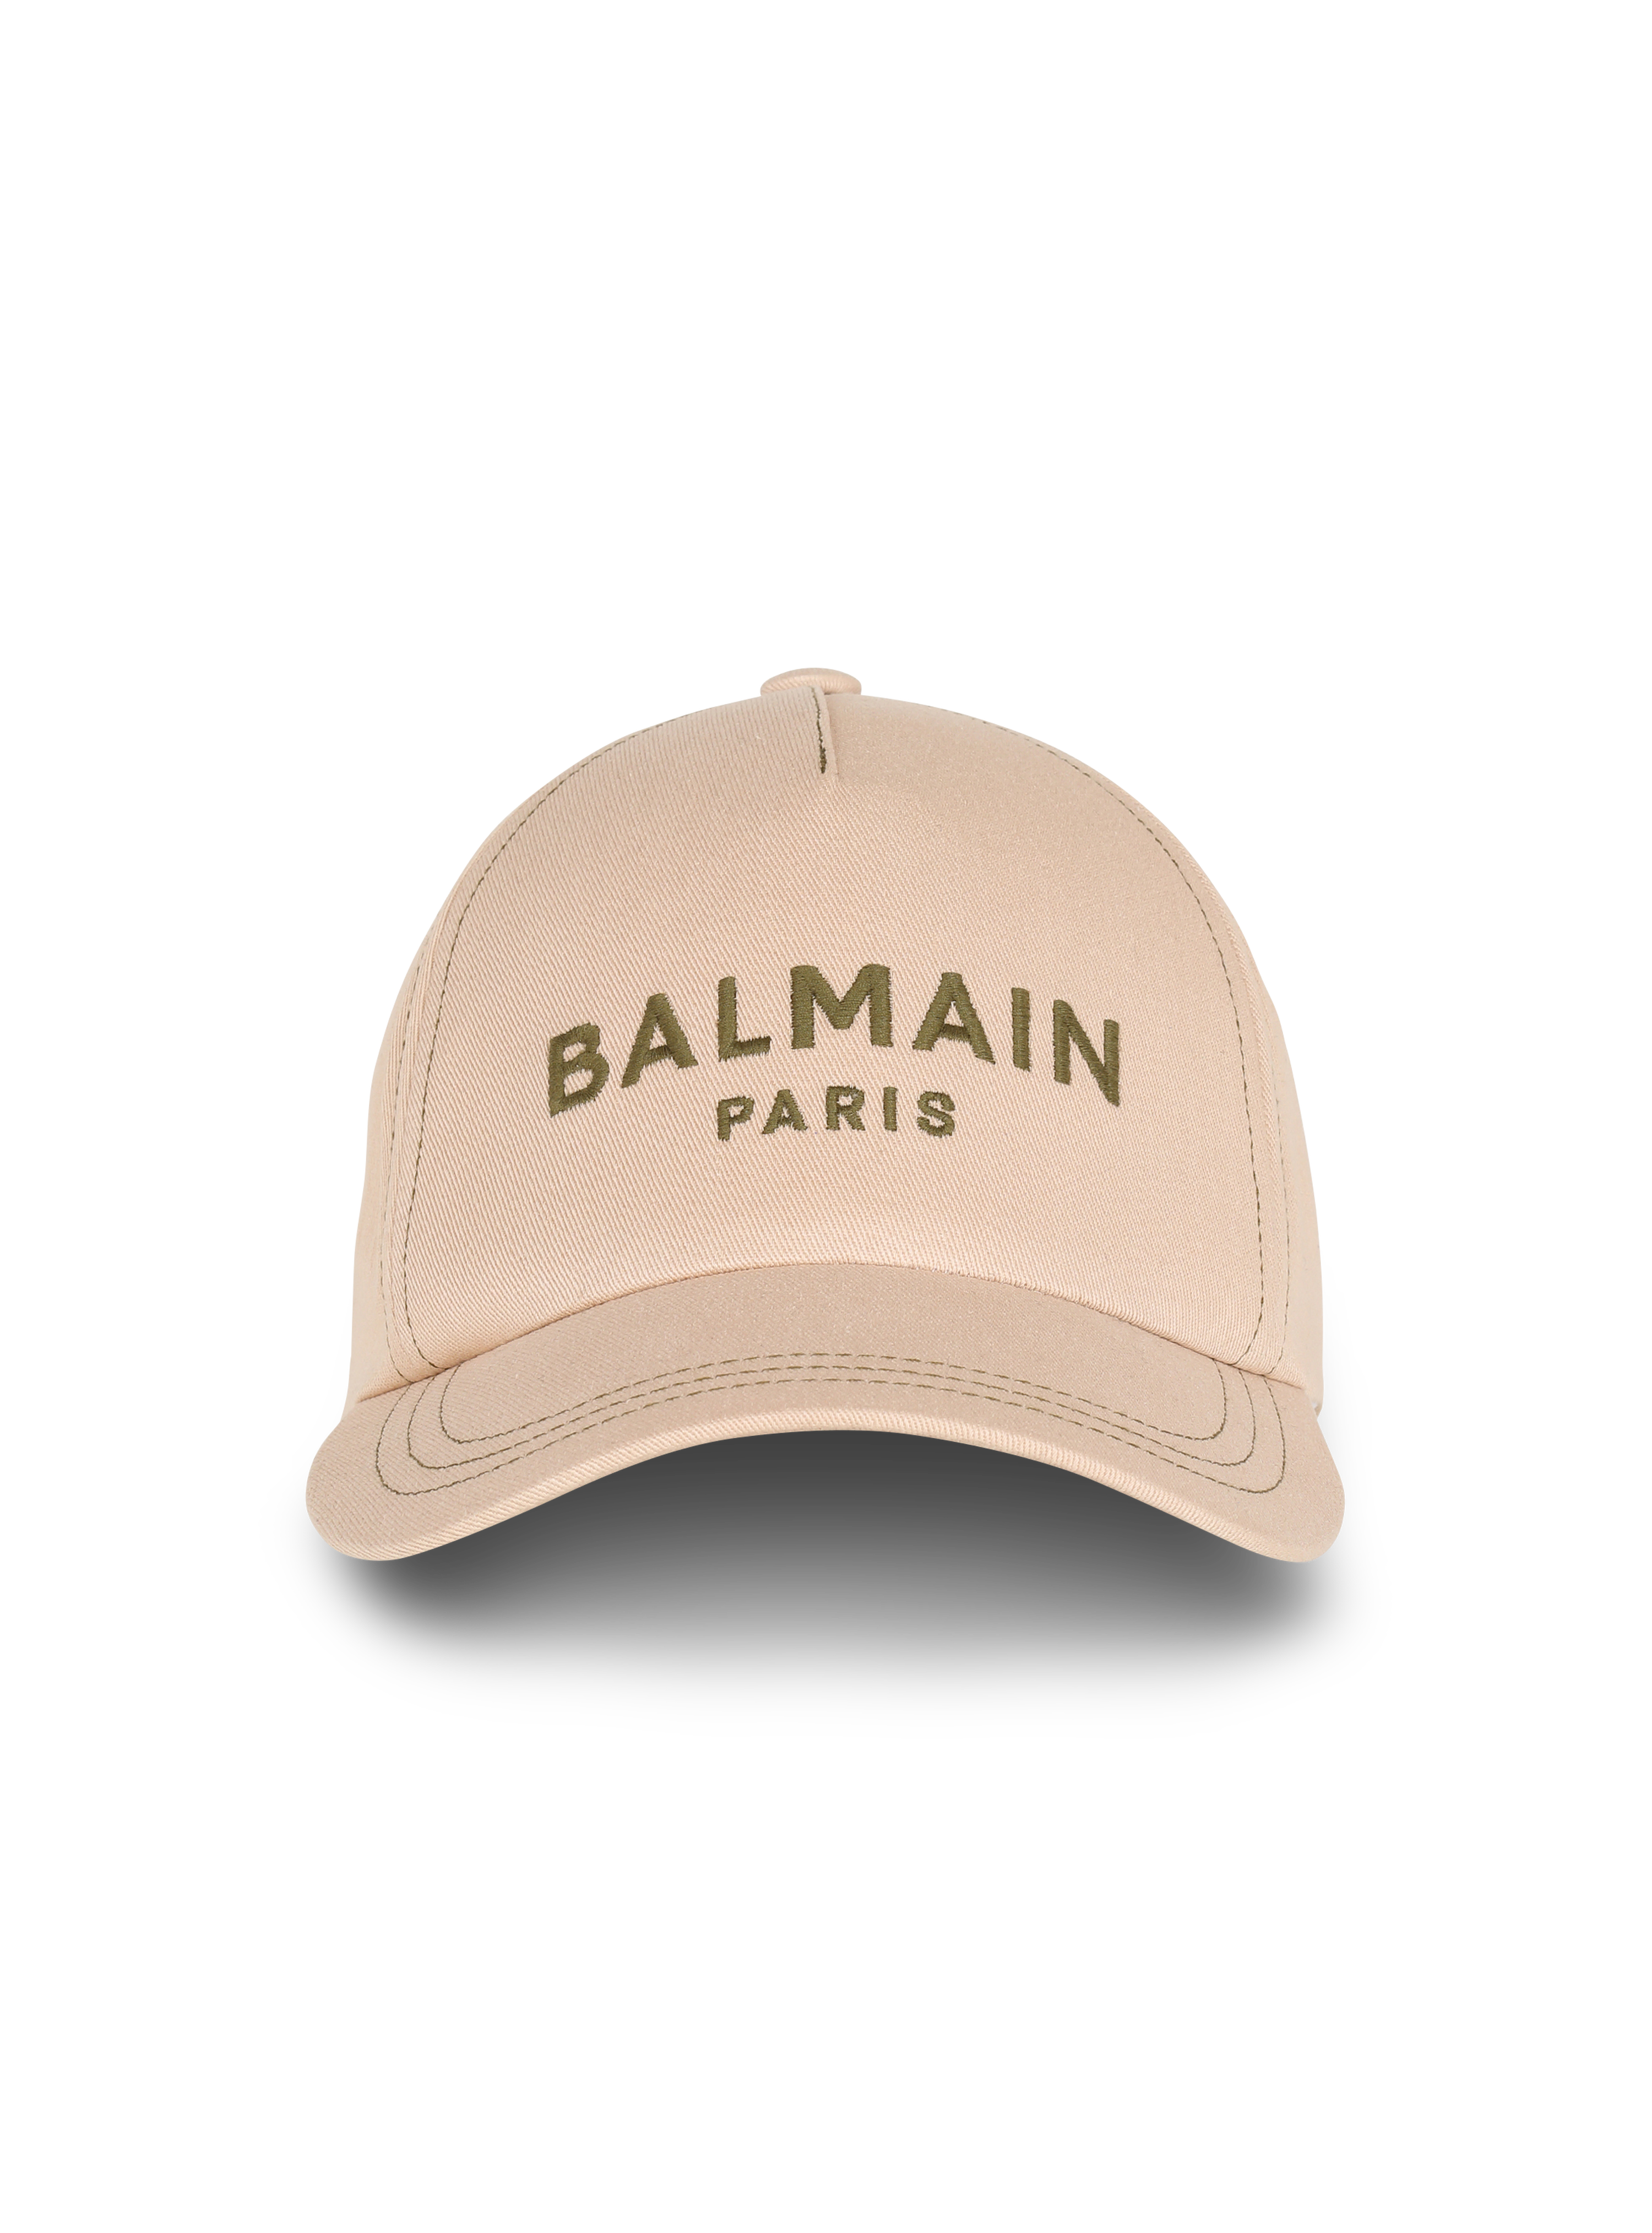 Cotton cap with Balmain logo, beige